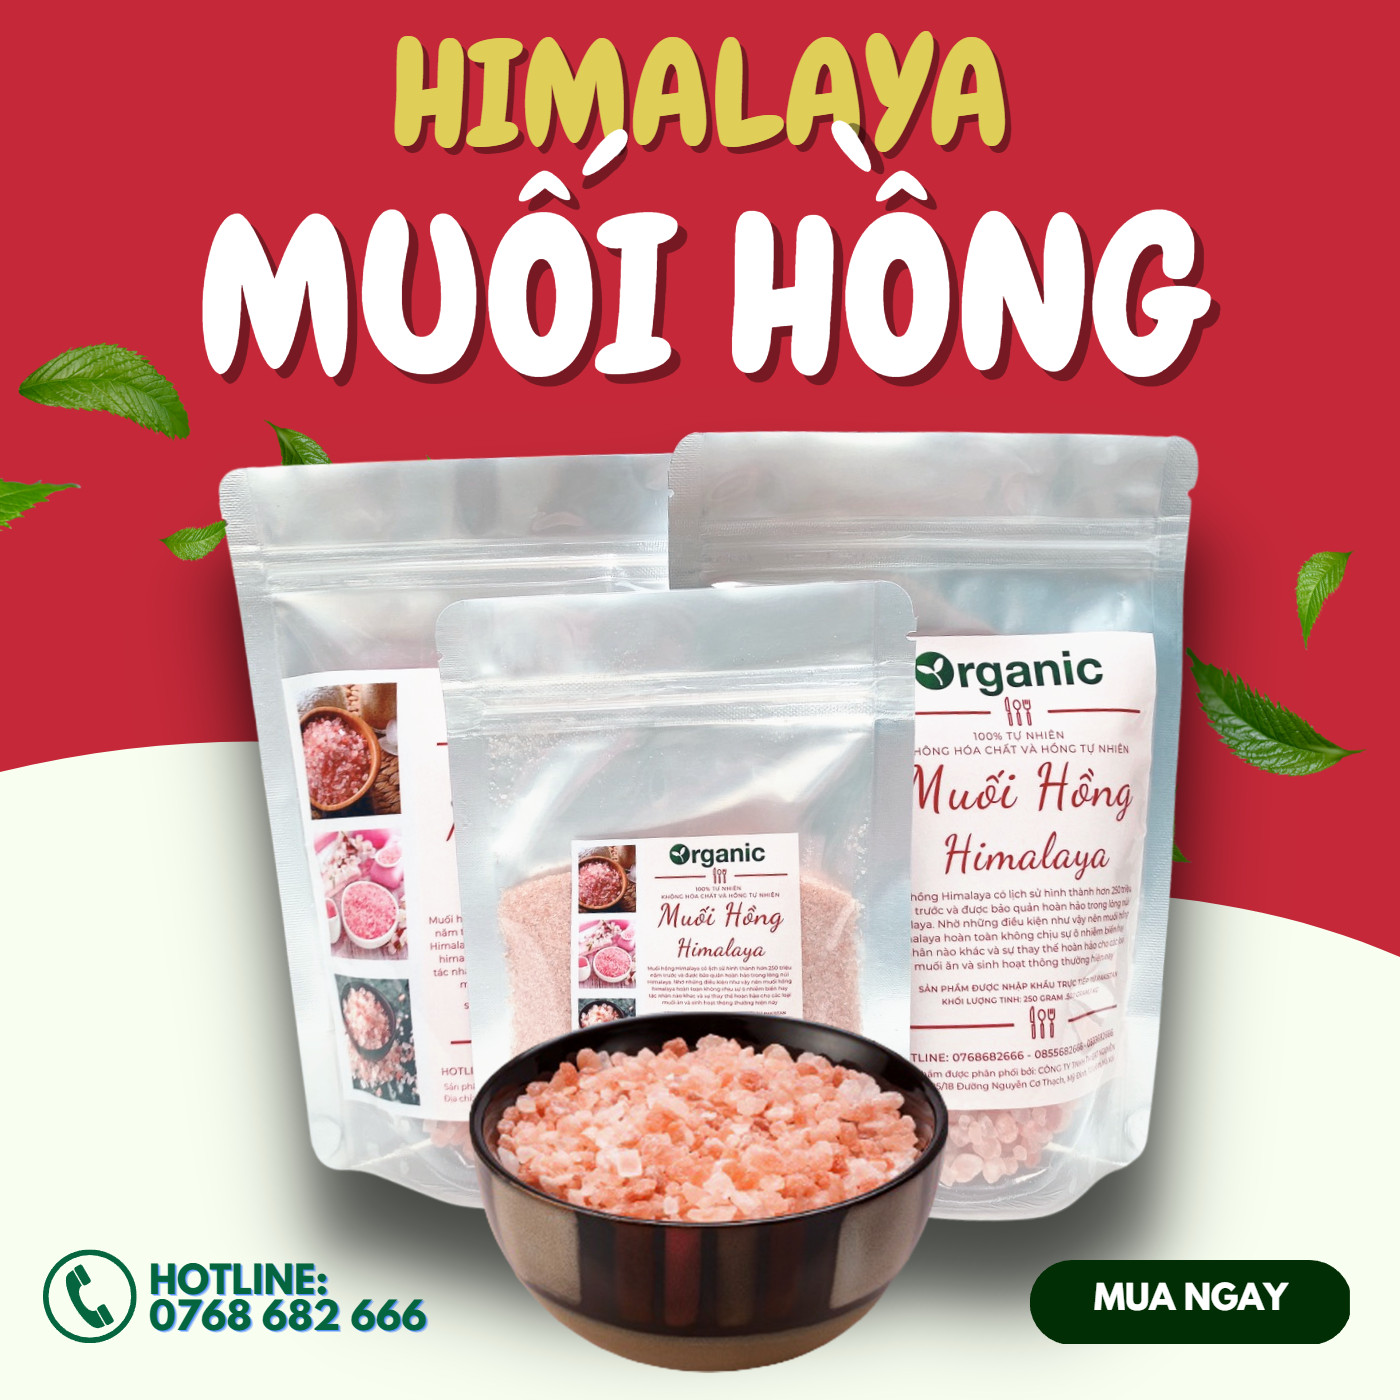 Muối Hồng Himalaya Organic Muối Hồng Himalaya Ngâm Chân Thải Độc Dạng Mịn Và Hạt tặng kèm khi mua bồn